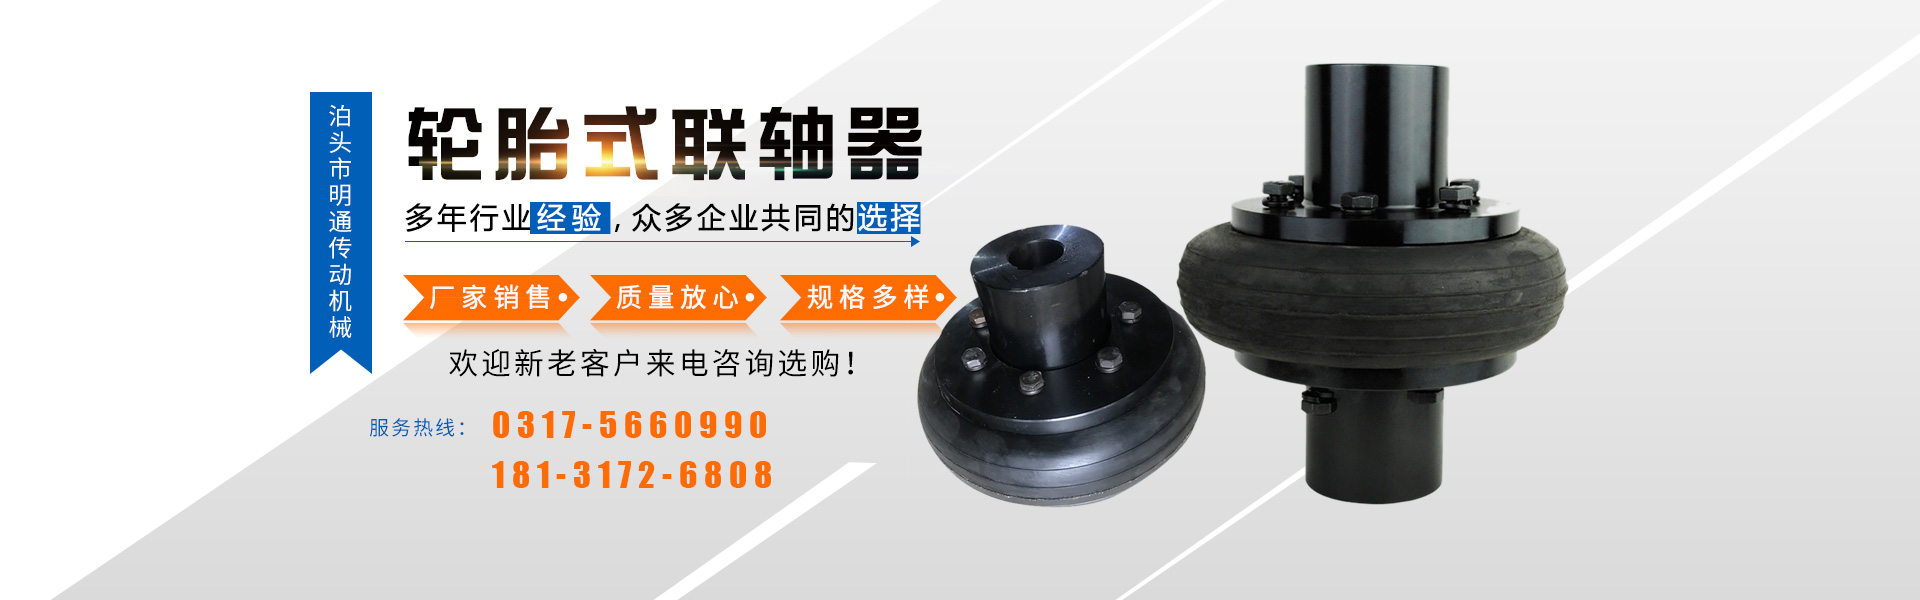 廣州南創廠家供稱重傳感器、壓力傳感器和位移等傳感器